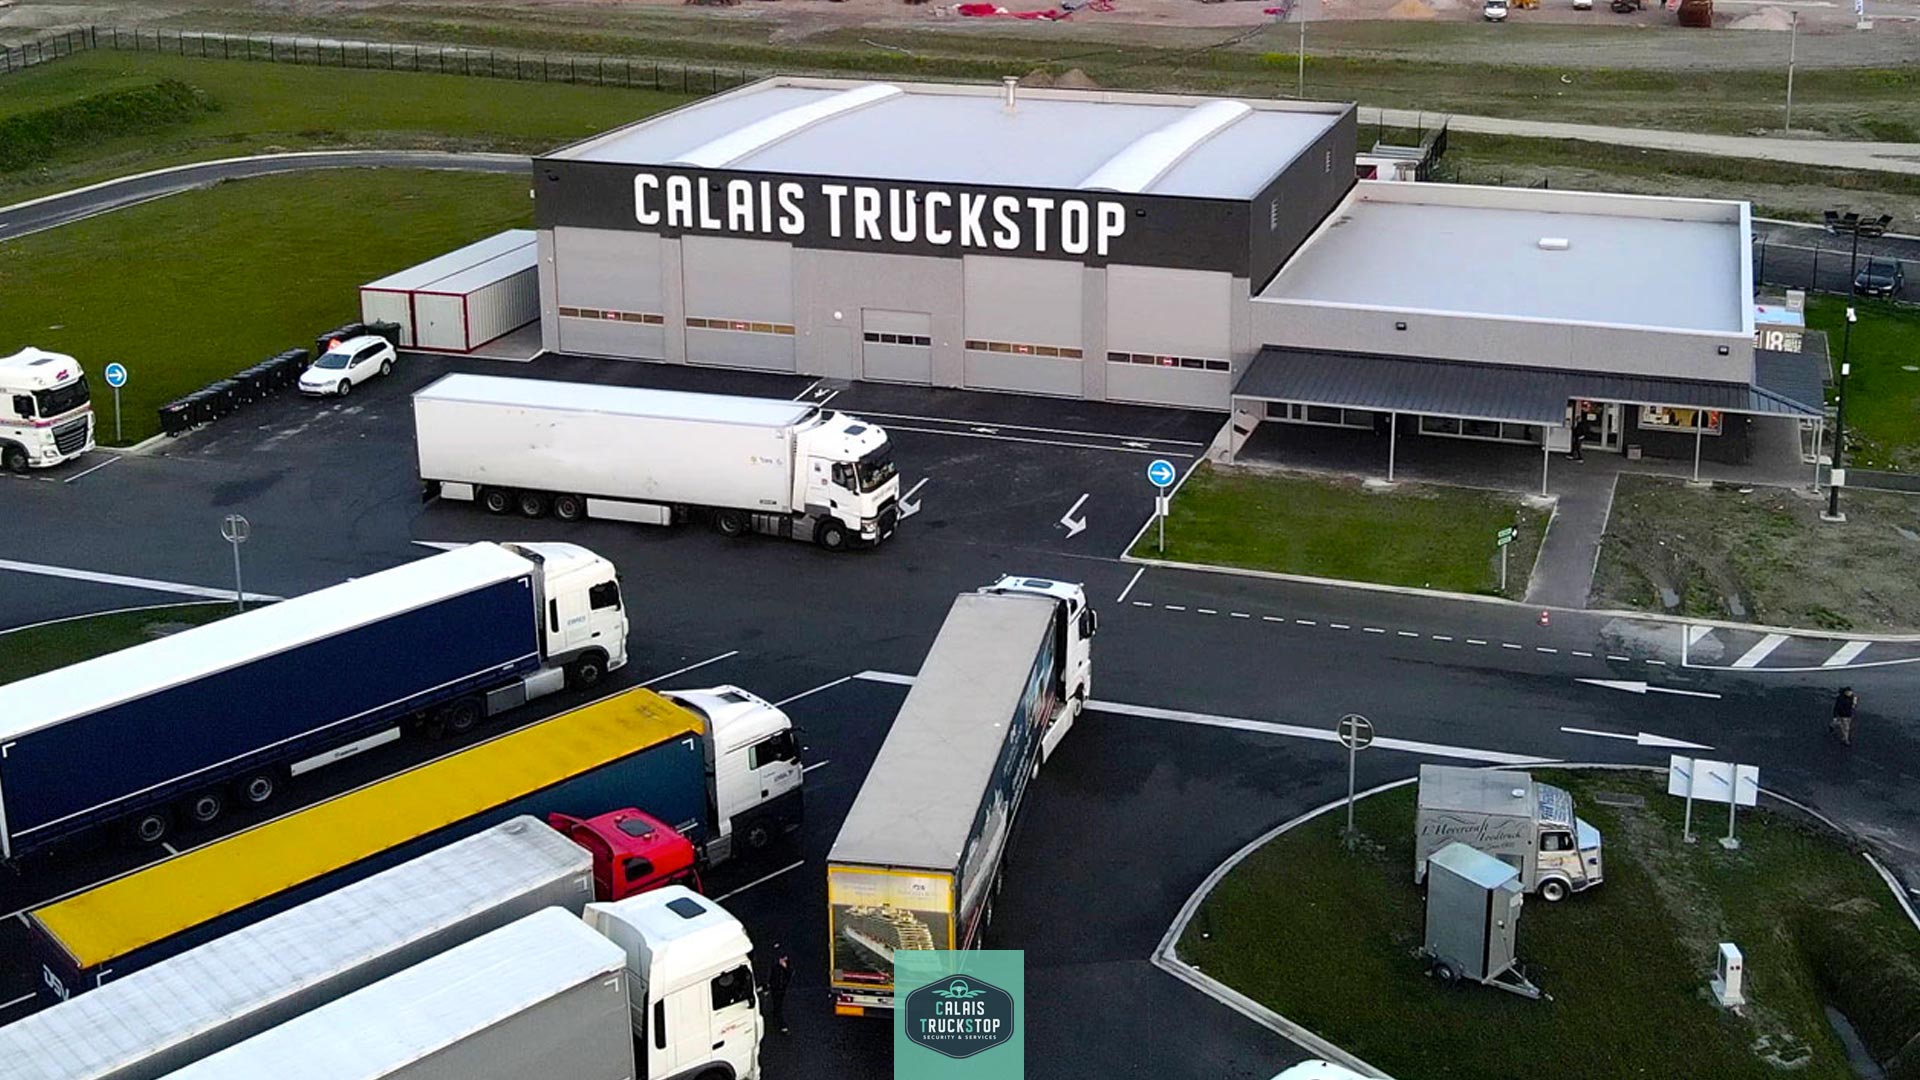 Calais Truckstop